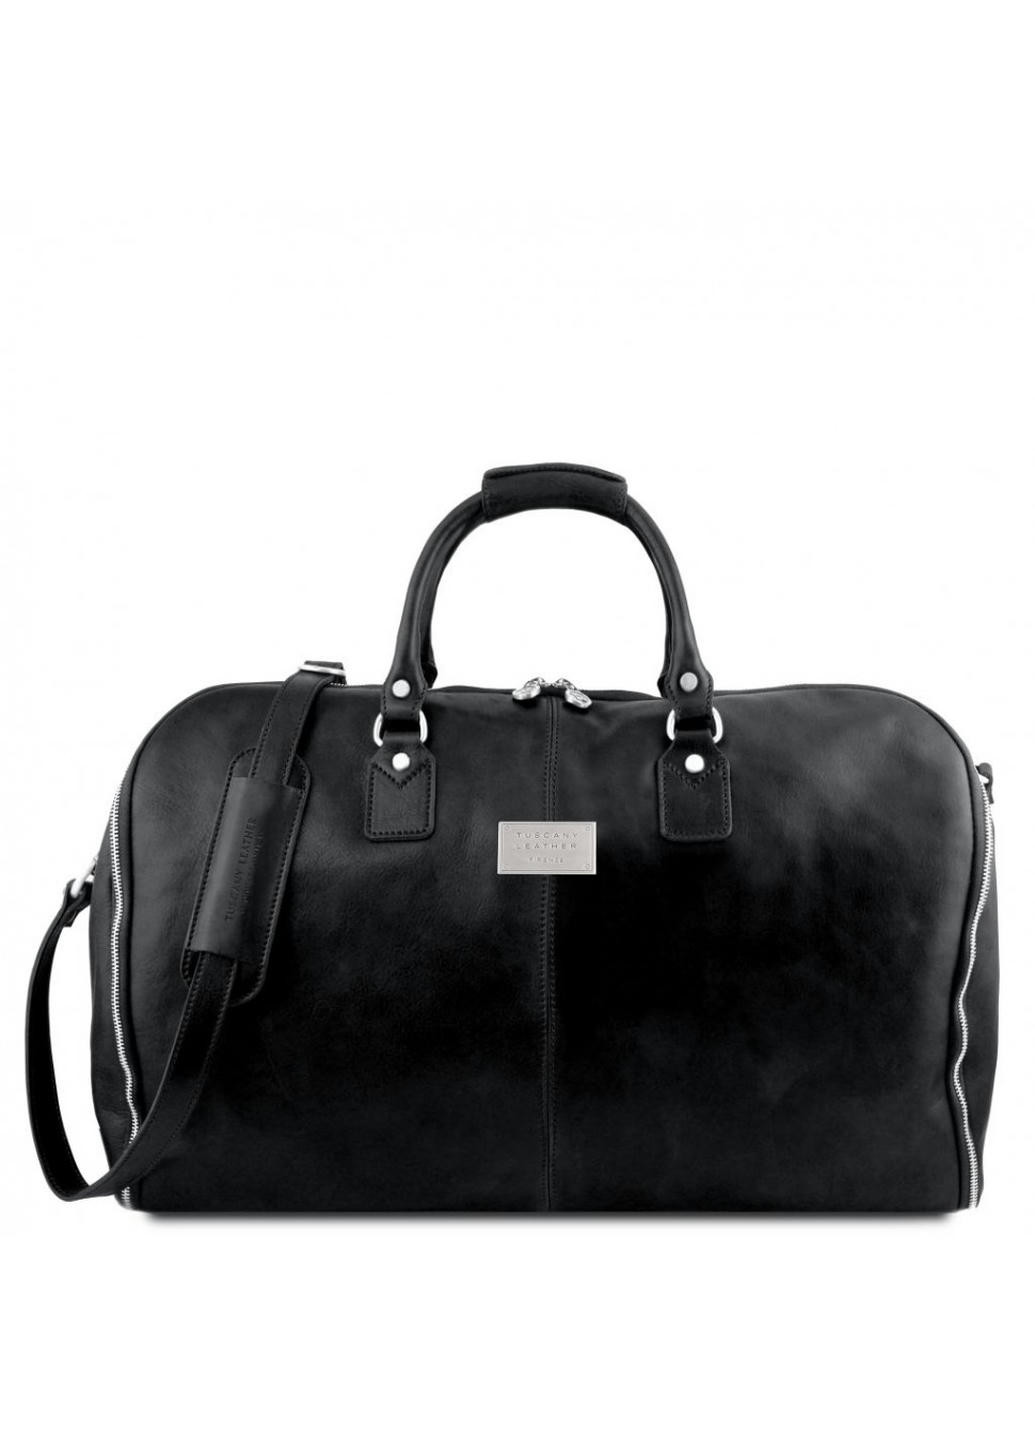 Шкіряна сумка портплед, гармент Antigua TL141538 від Tuscany (Чорний) Tuscany Leather (257657079)